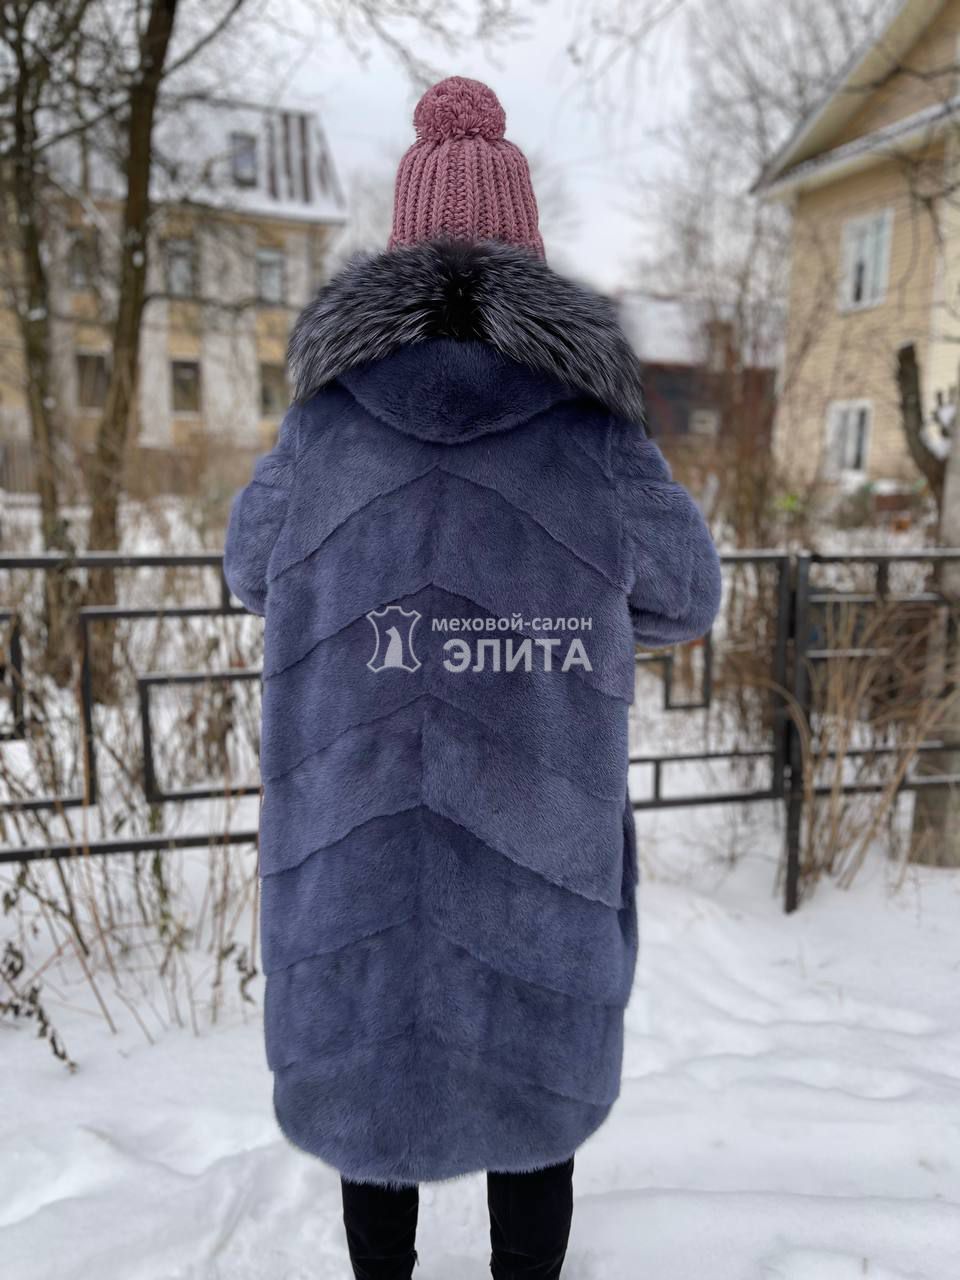 Пальто из норки S-18237 р-р 48-52, цена 179500 рублей в интернет-магазине кожи и меха ЭЛИТА. Вид 2